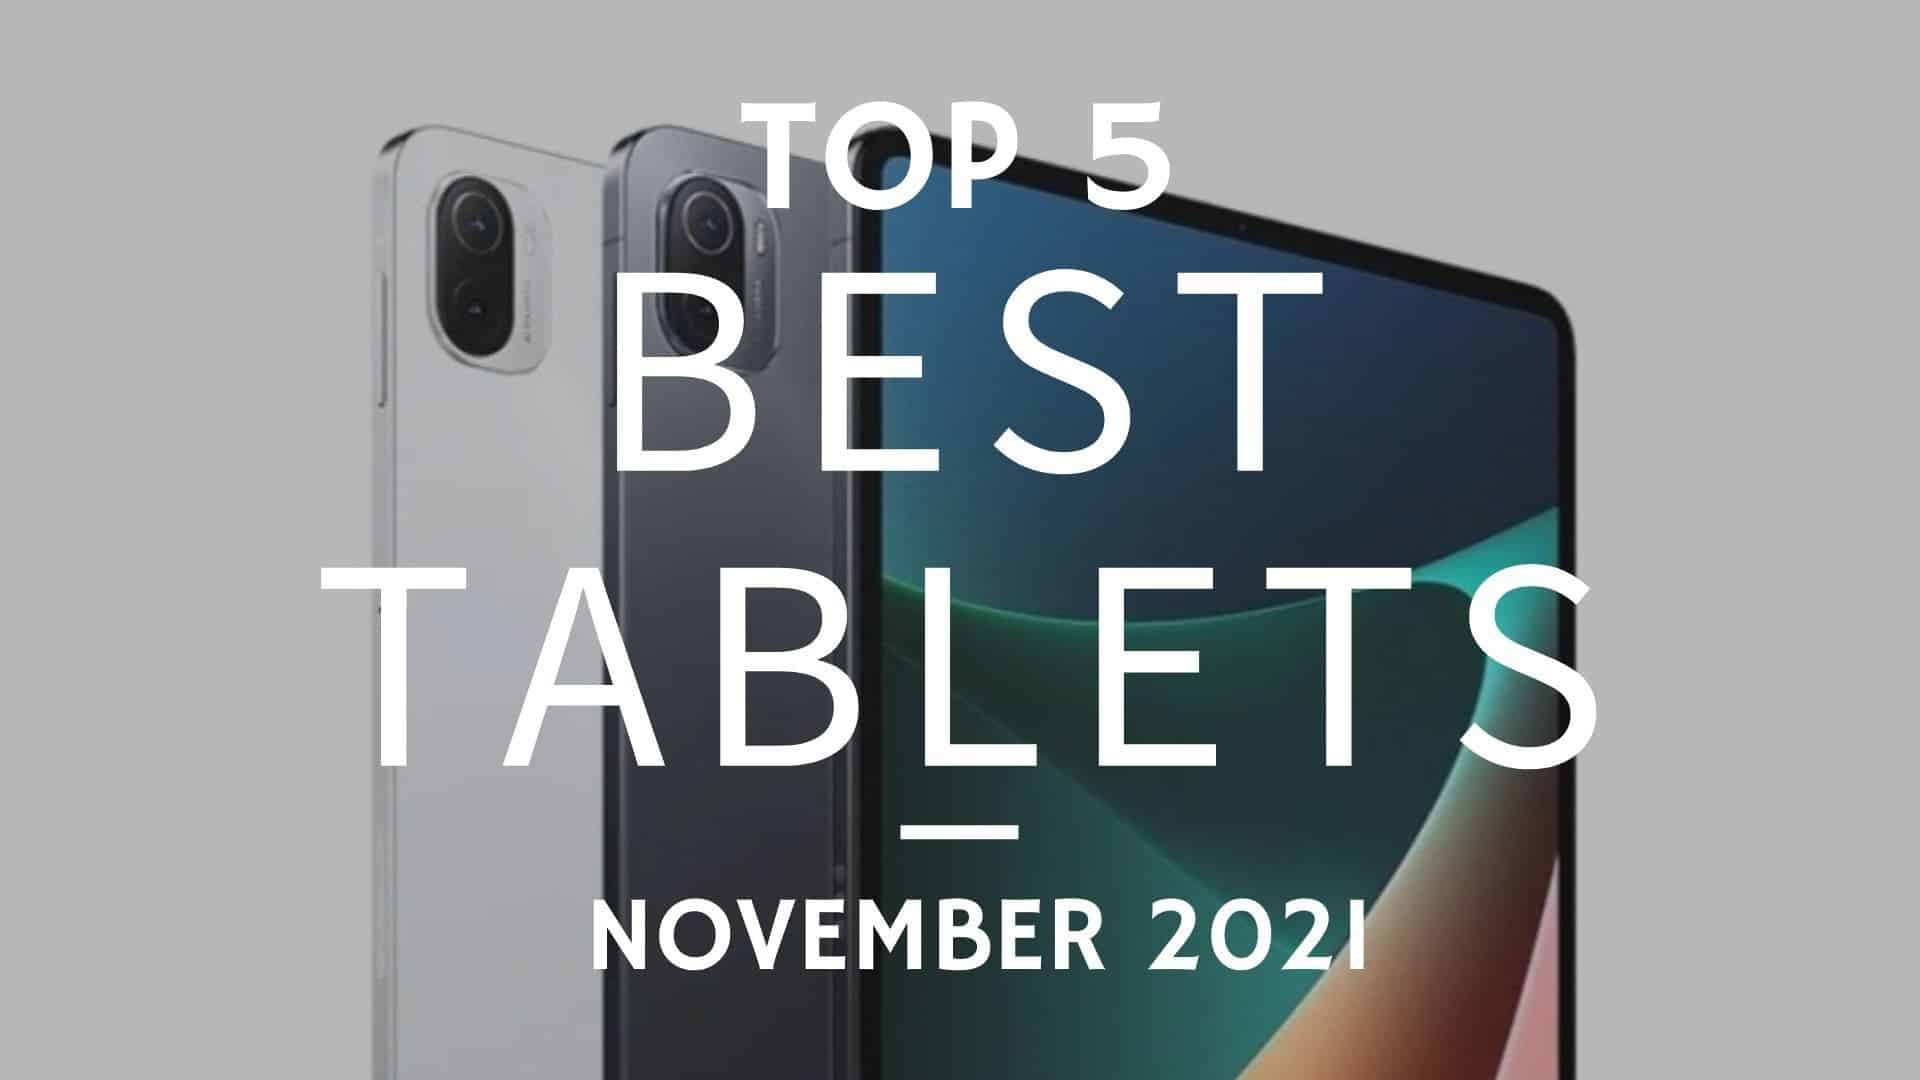 Top 5 Best Tablets for November 2021